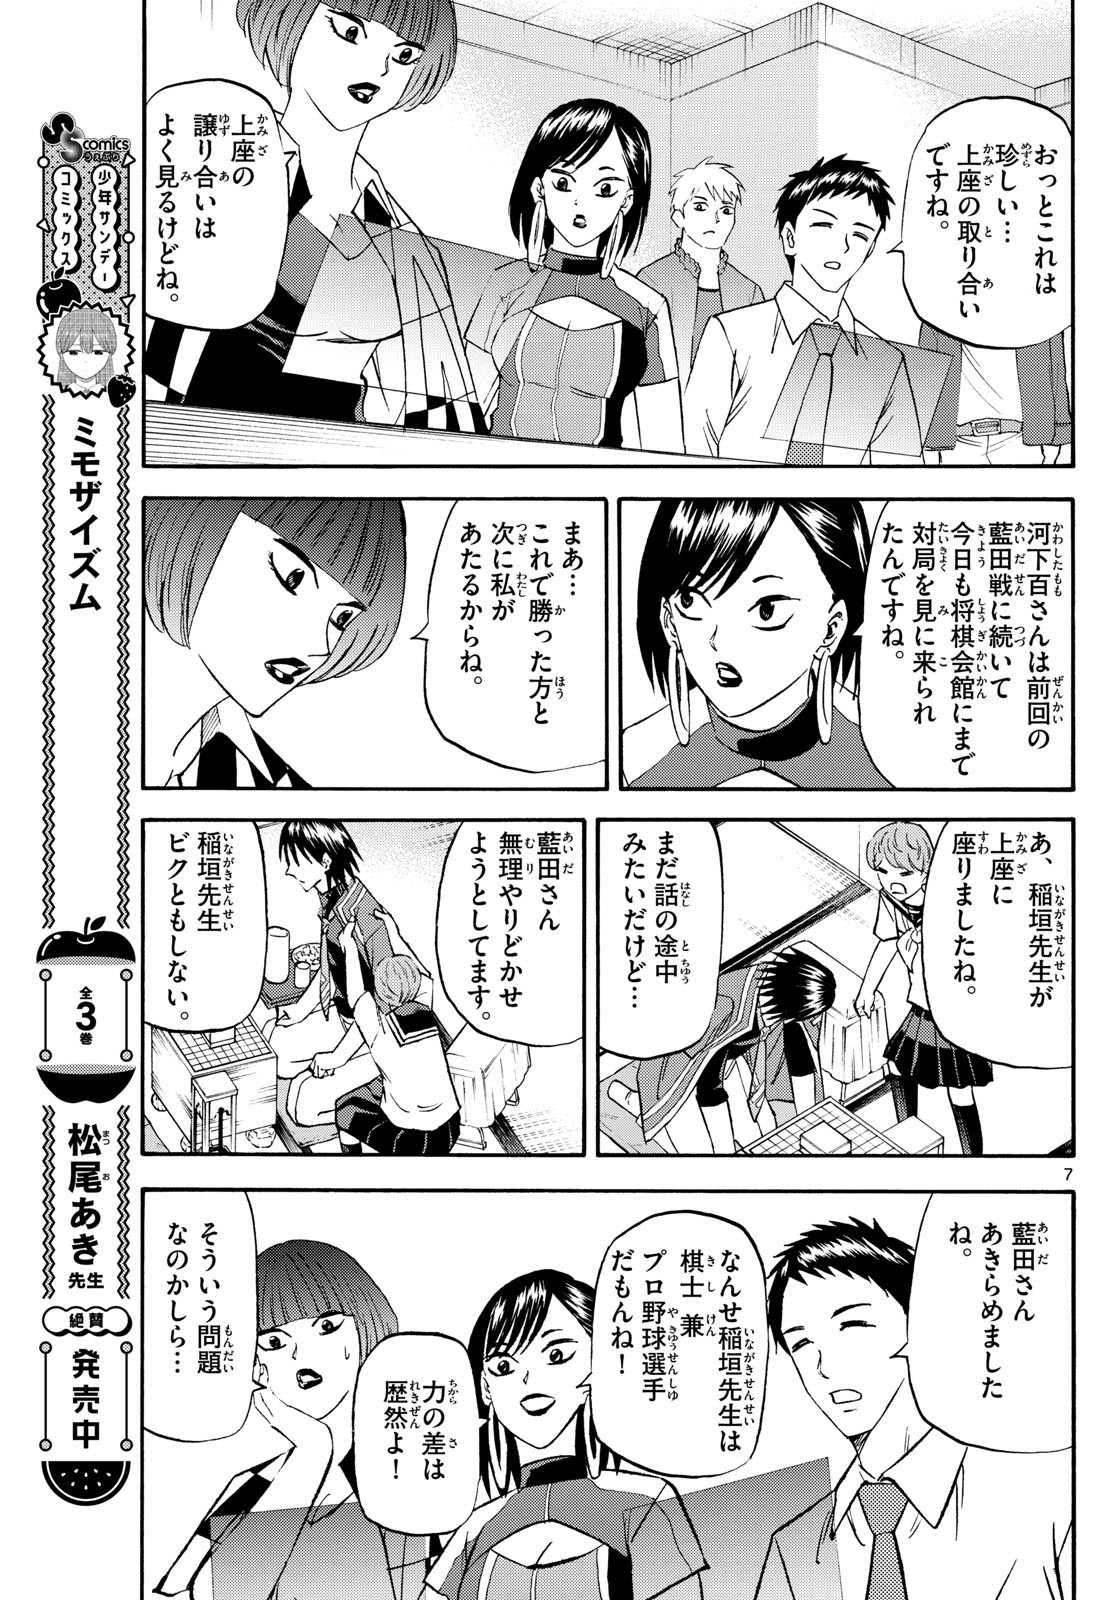 Ryu-to-Ichigo - Chapter 197 - Page 7